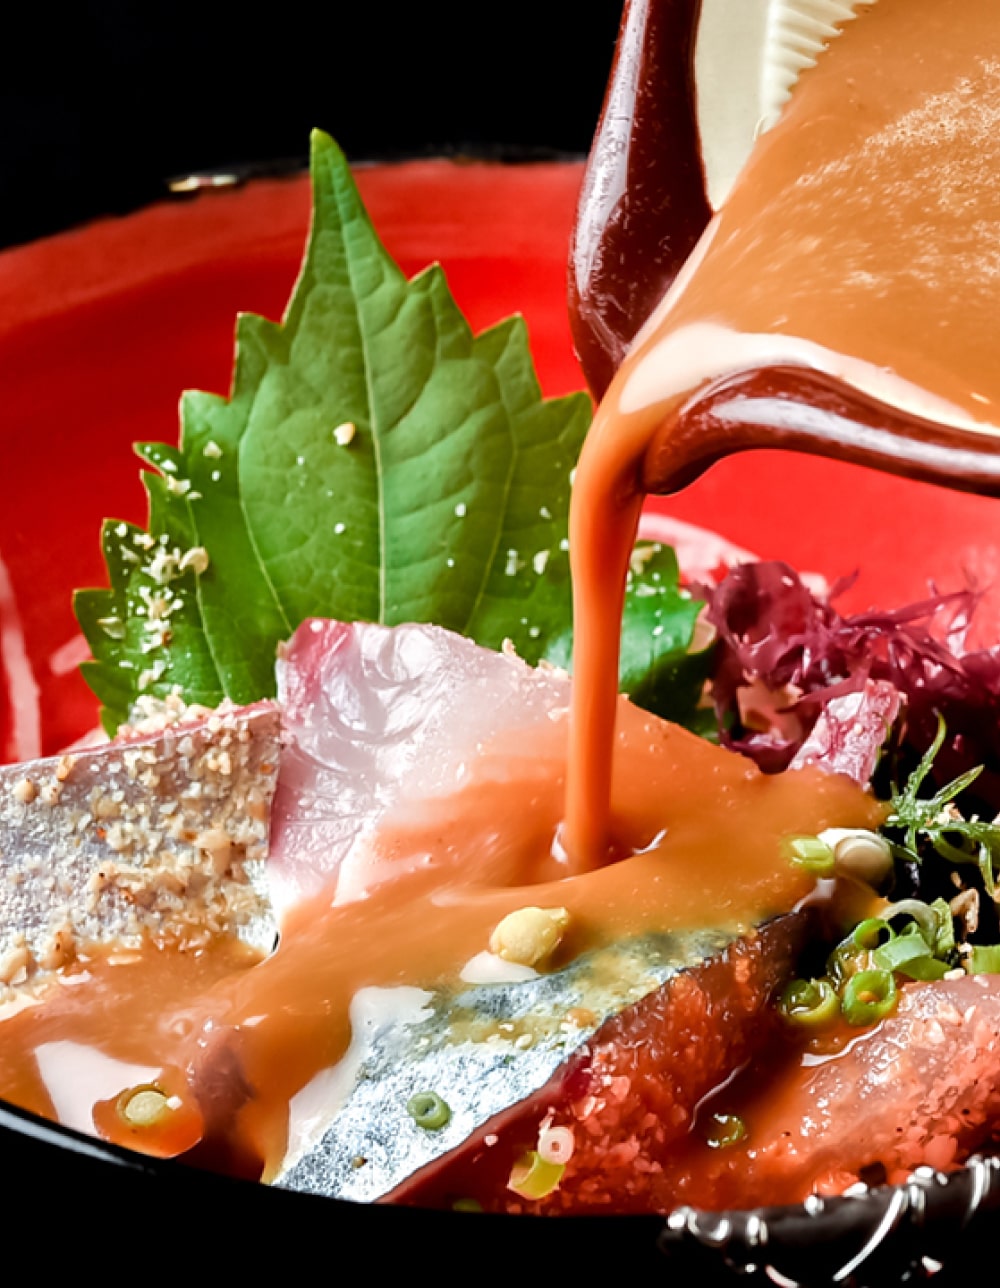 コリコリとした生の鯖にお好みで特製味噌ダレを掛けてお召し上がりください。